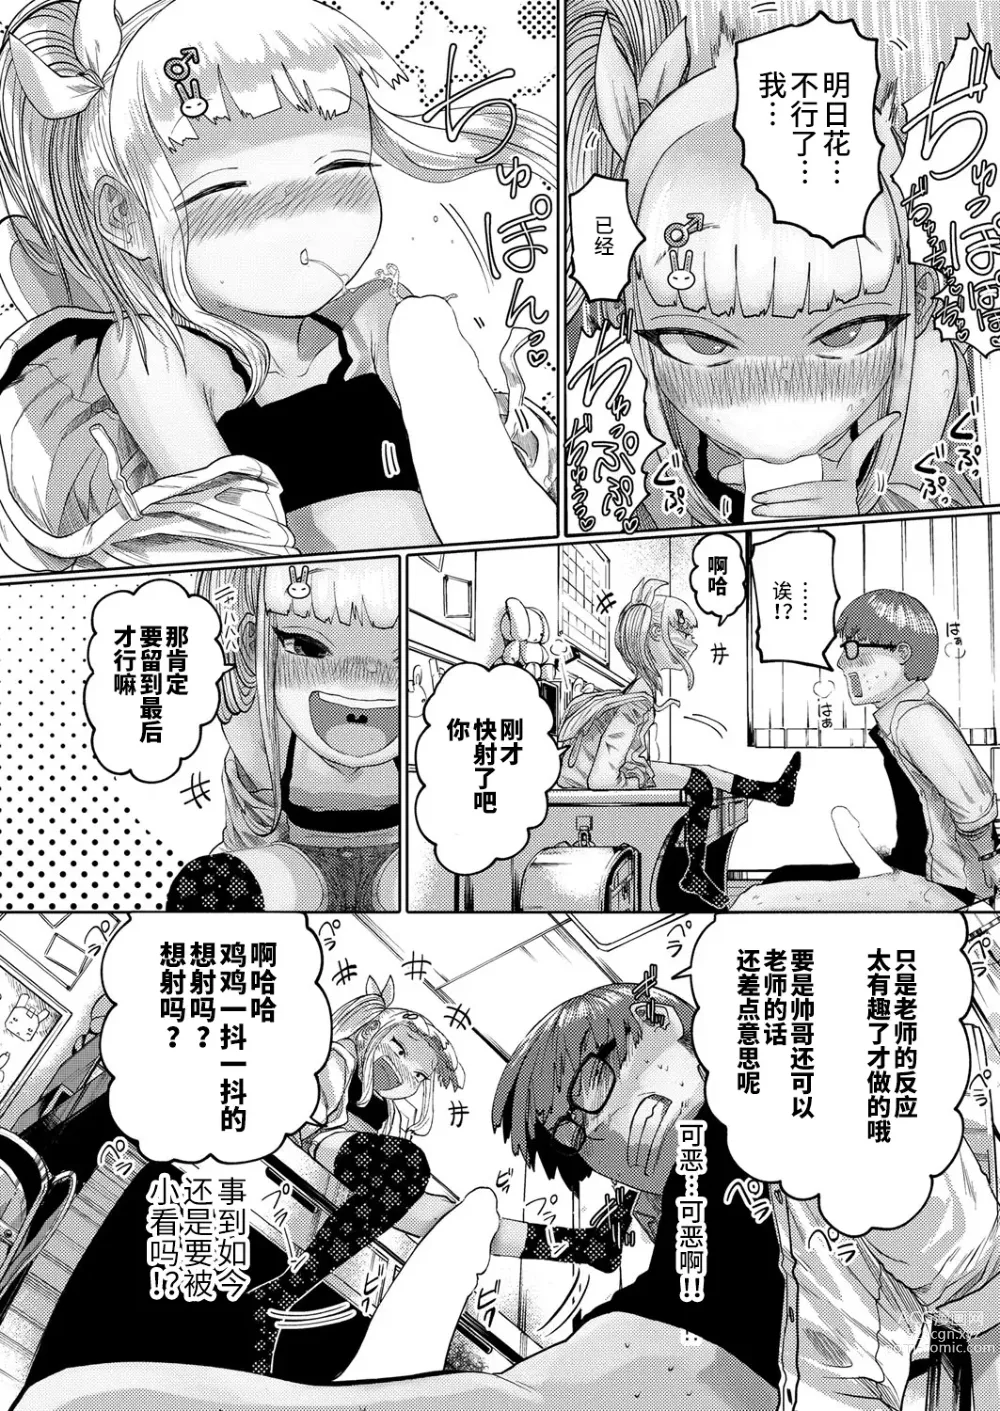 Page 10 of manga ねーうしとらうー! #1-5